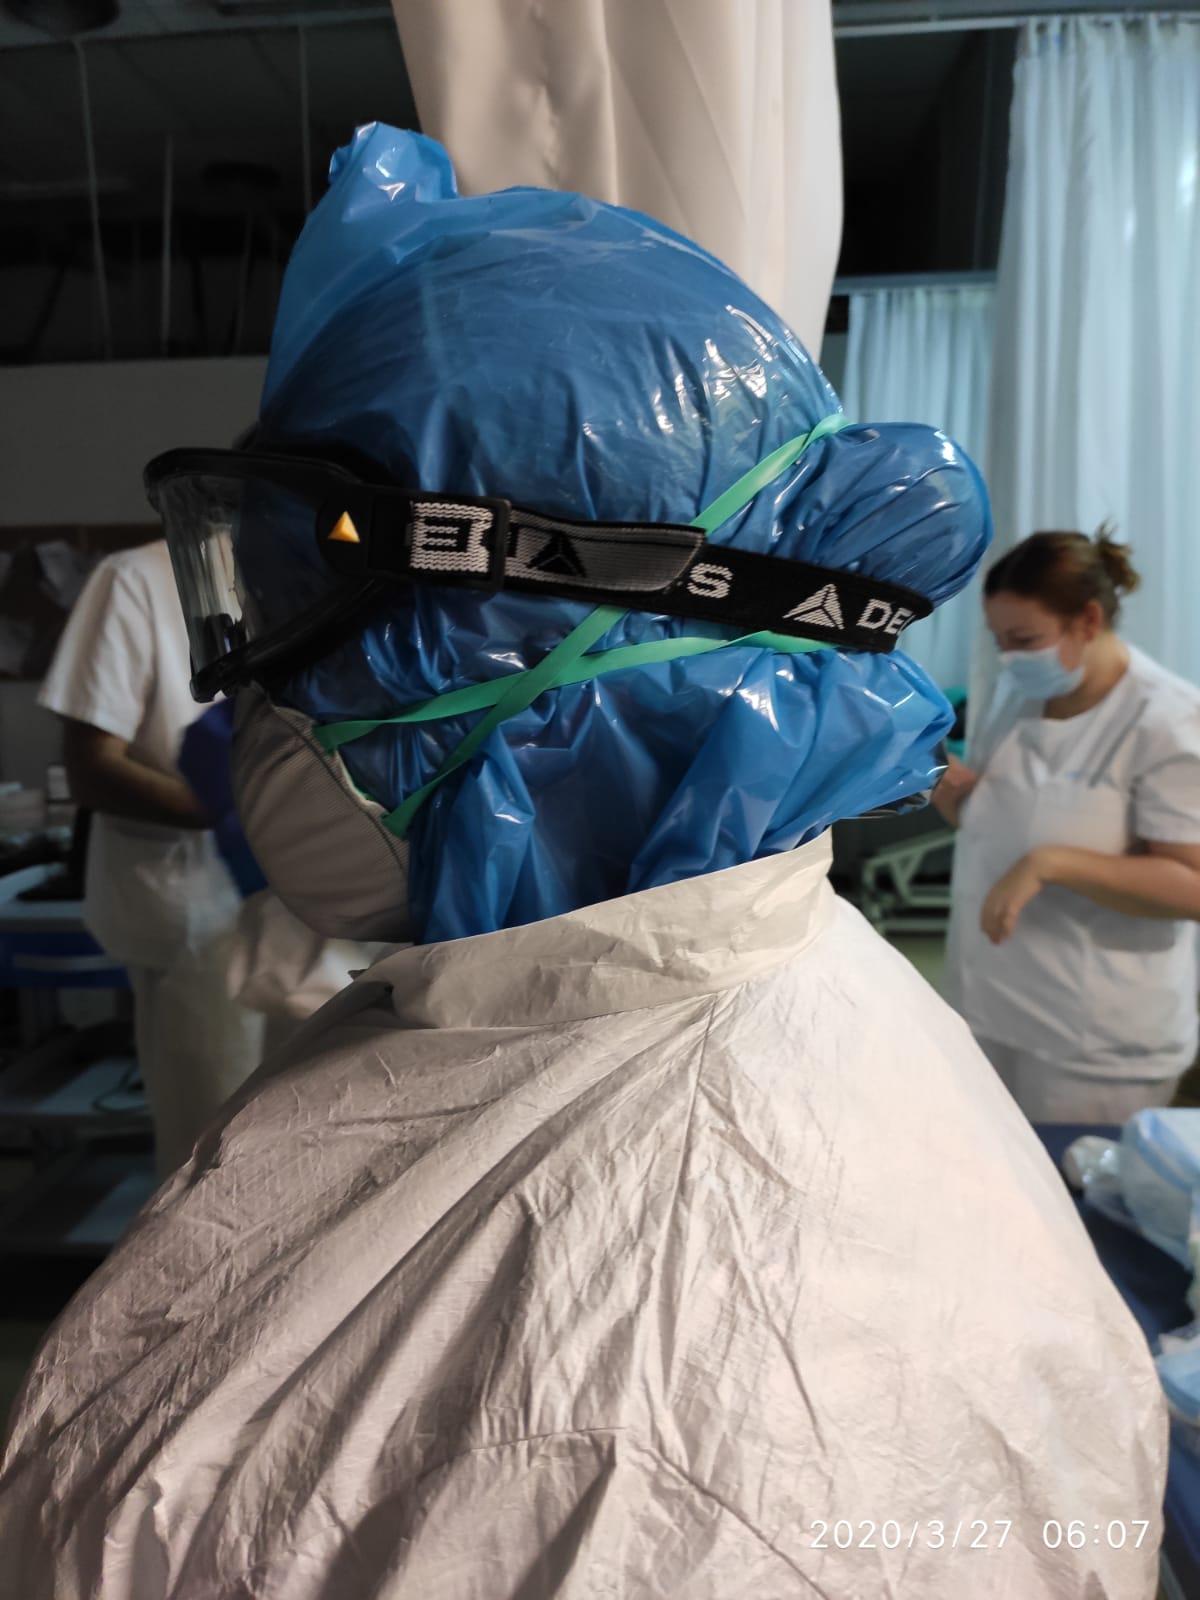 Bolsas de plástico usadas como protección para la cabeza por falta de material, en el Hospital La Paz